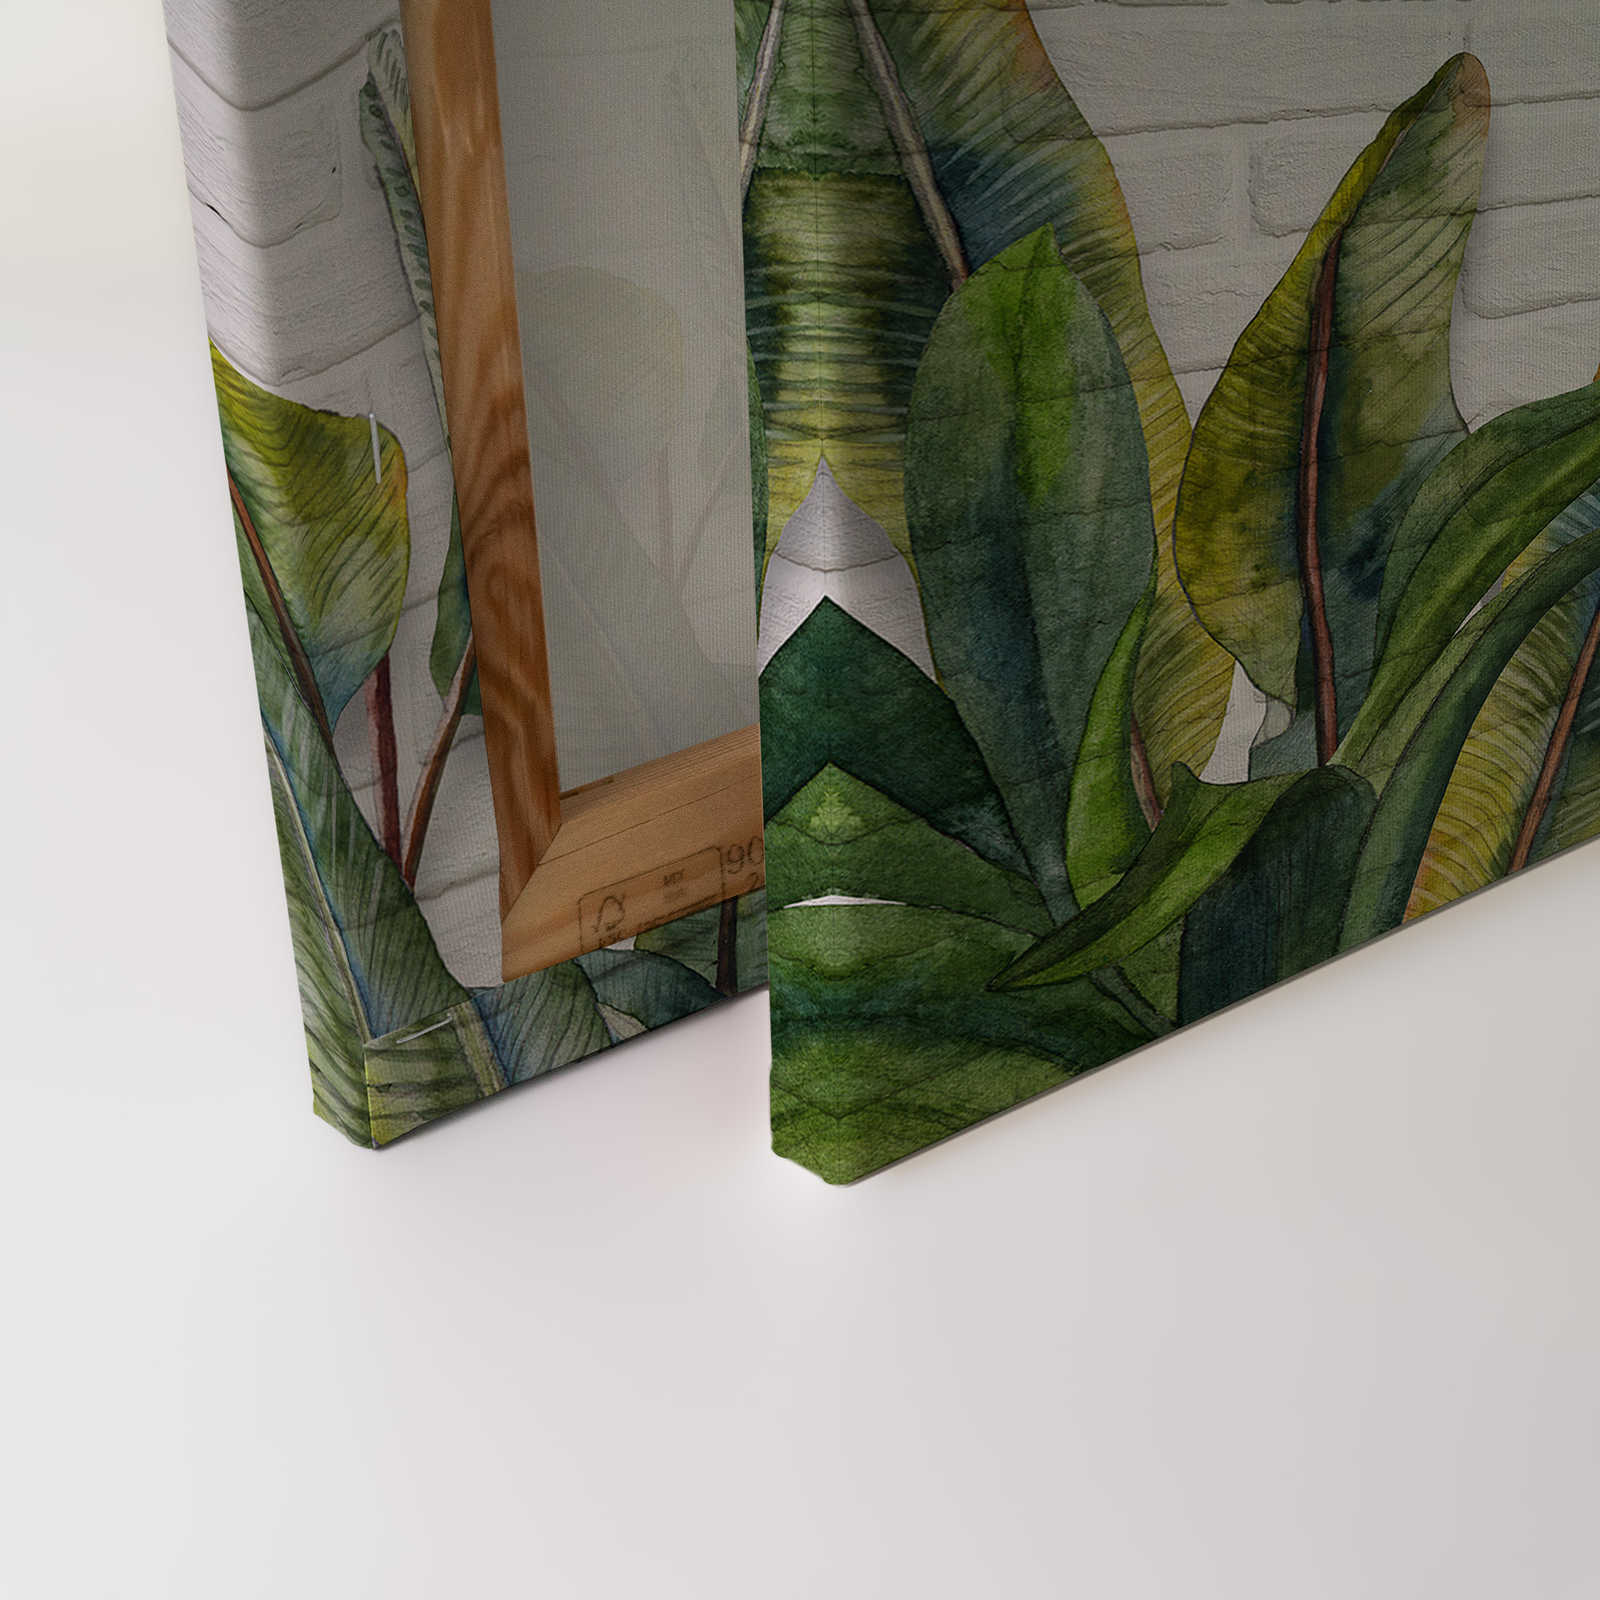             Cuadro en lienzo con hojas delante de pared de ladrillo blanco - 0,90 m x 0,60 m
        